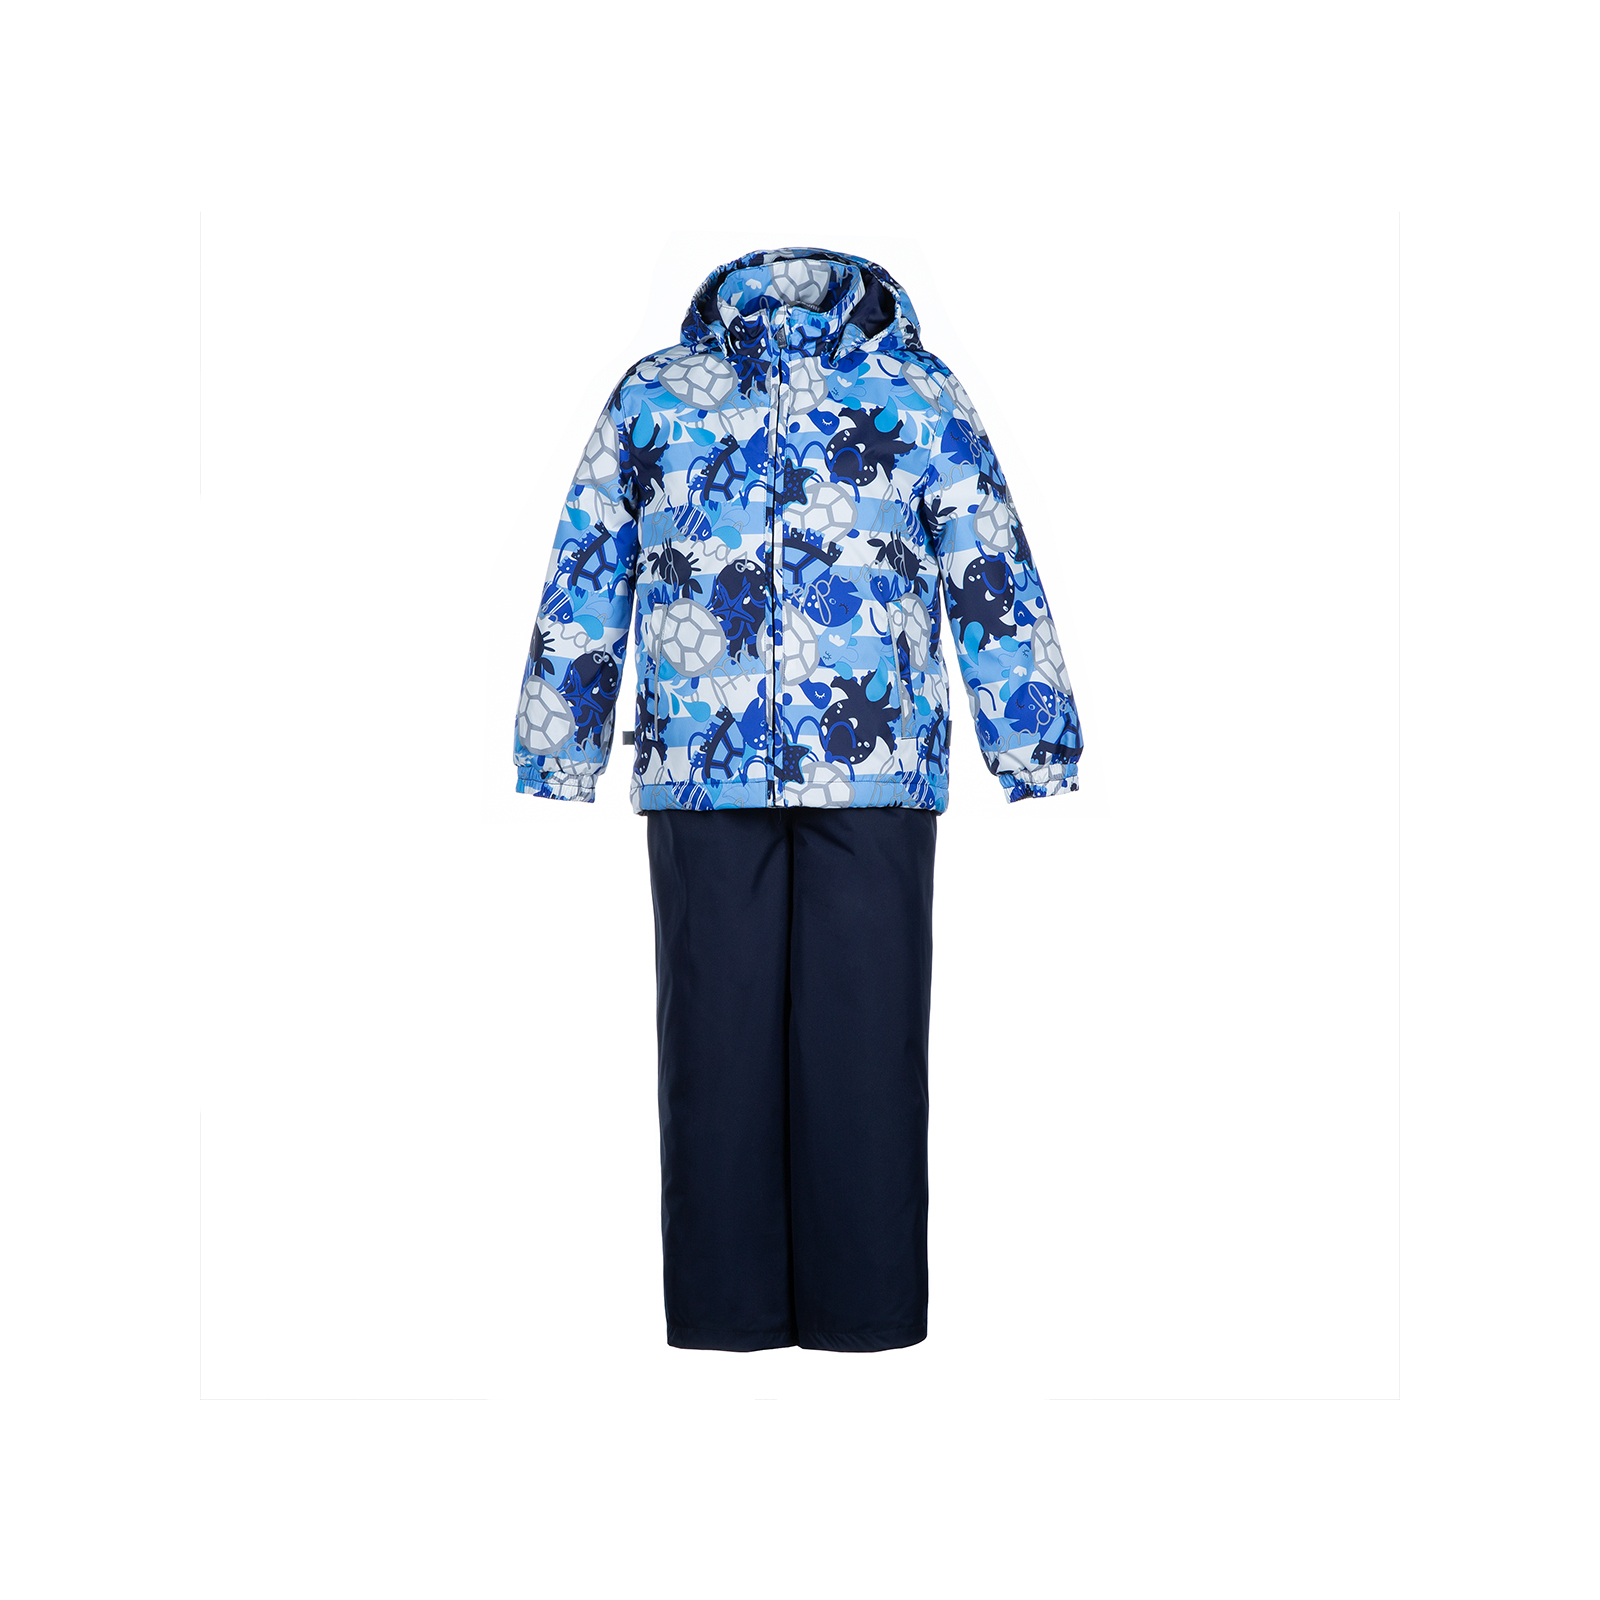 Комплект верхней одежды Huppa YOKO 41190014 тёмно-синий с принтом/тёмно-синий 110 (4741468760407)